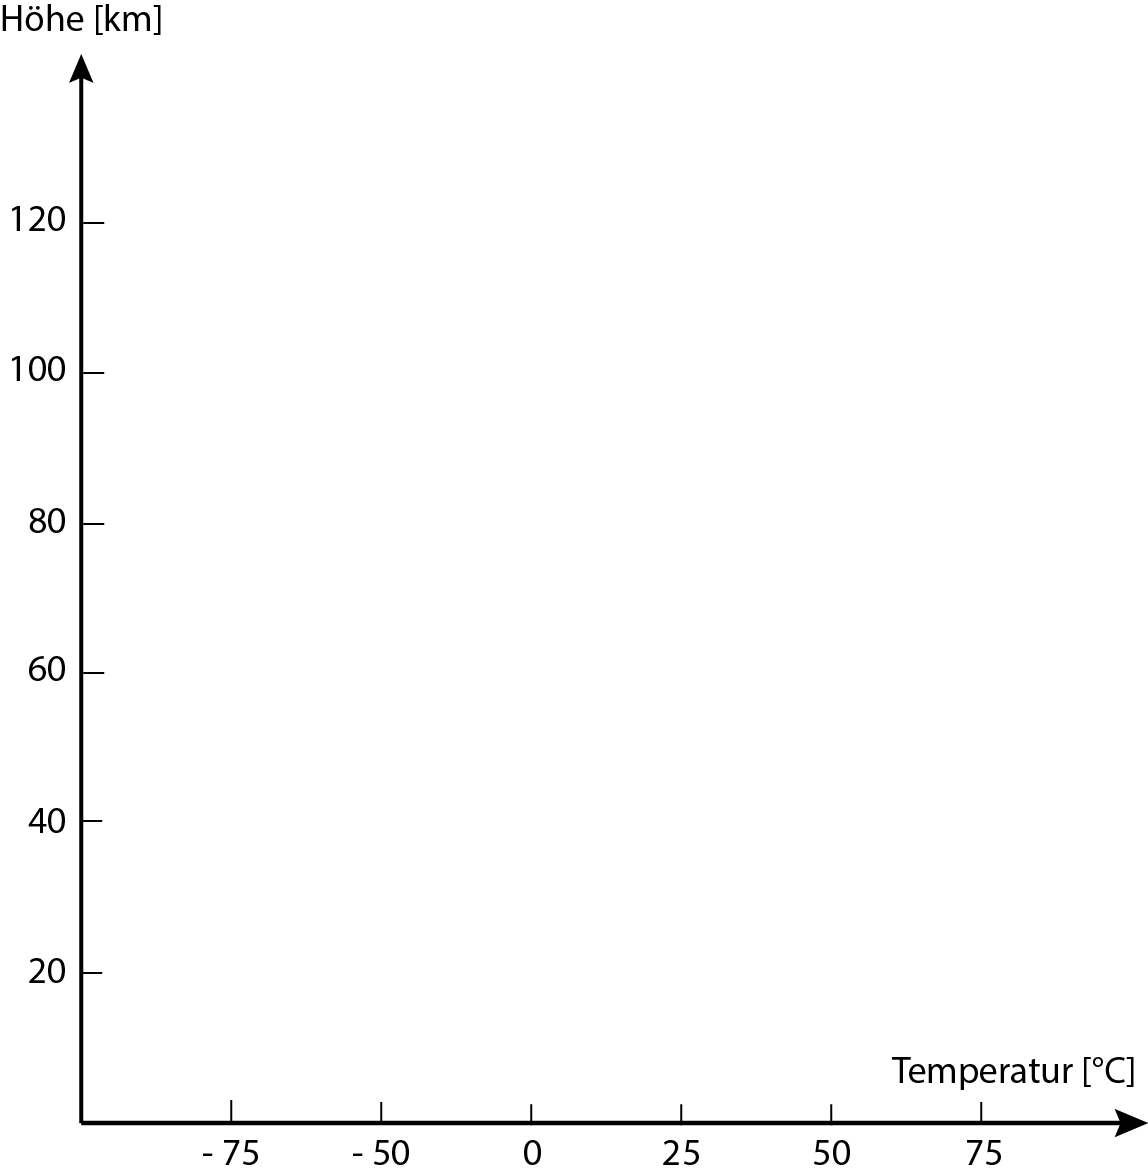 Lufttemperatur-in-Abhängigkeit-von-der-Höhe